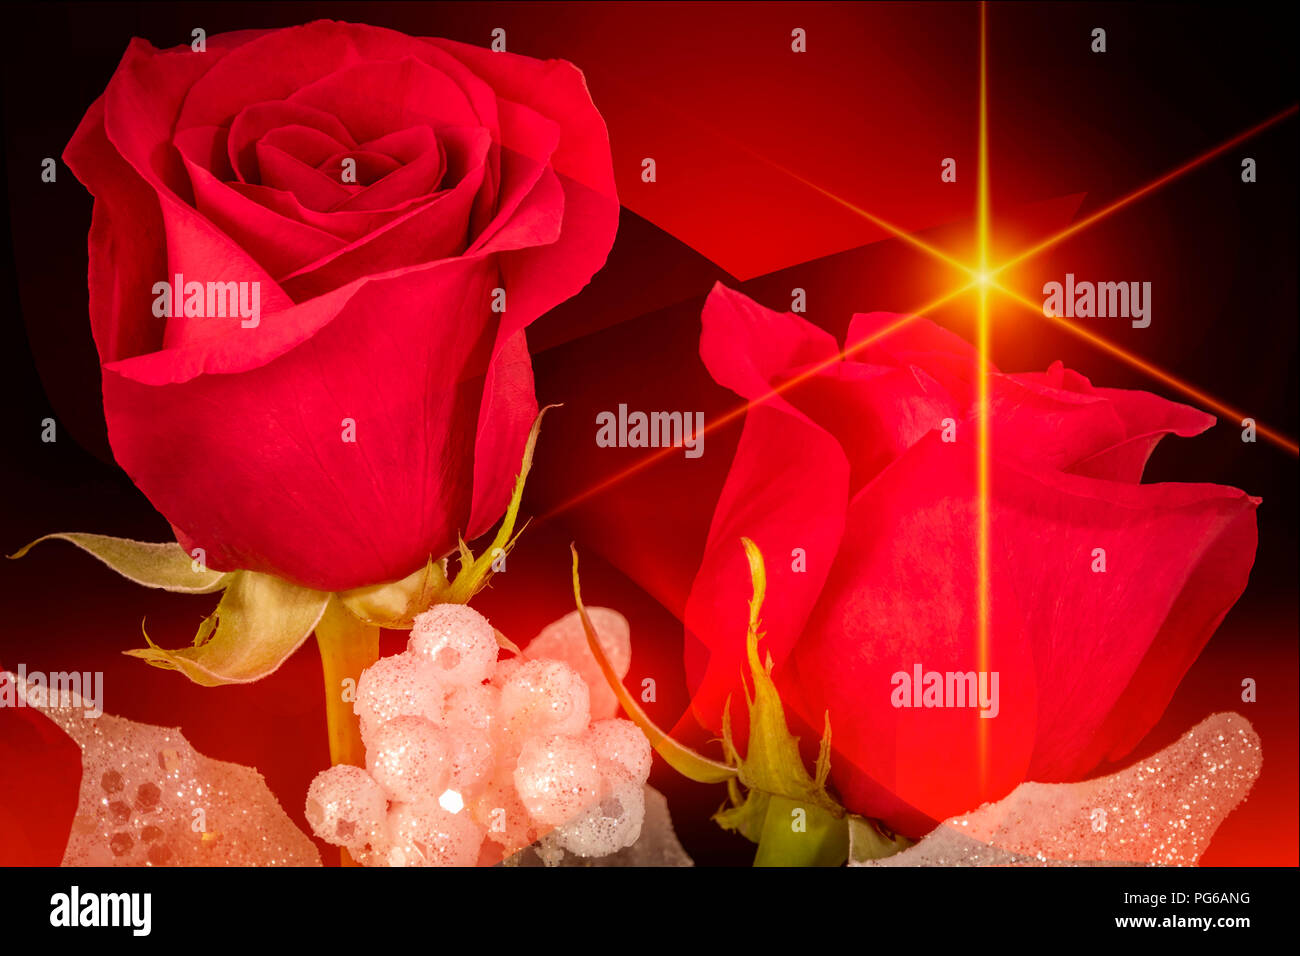 Deux Roses rouges avec une décoration paillettes avec un fond noir et rouge et jaune star Banque D'Images